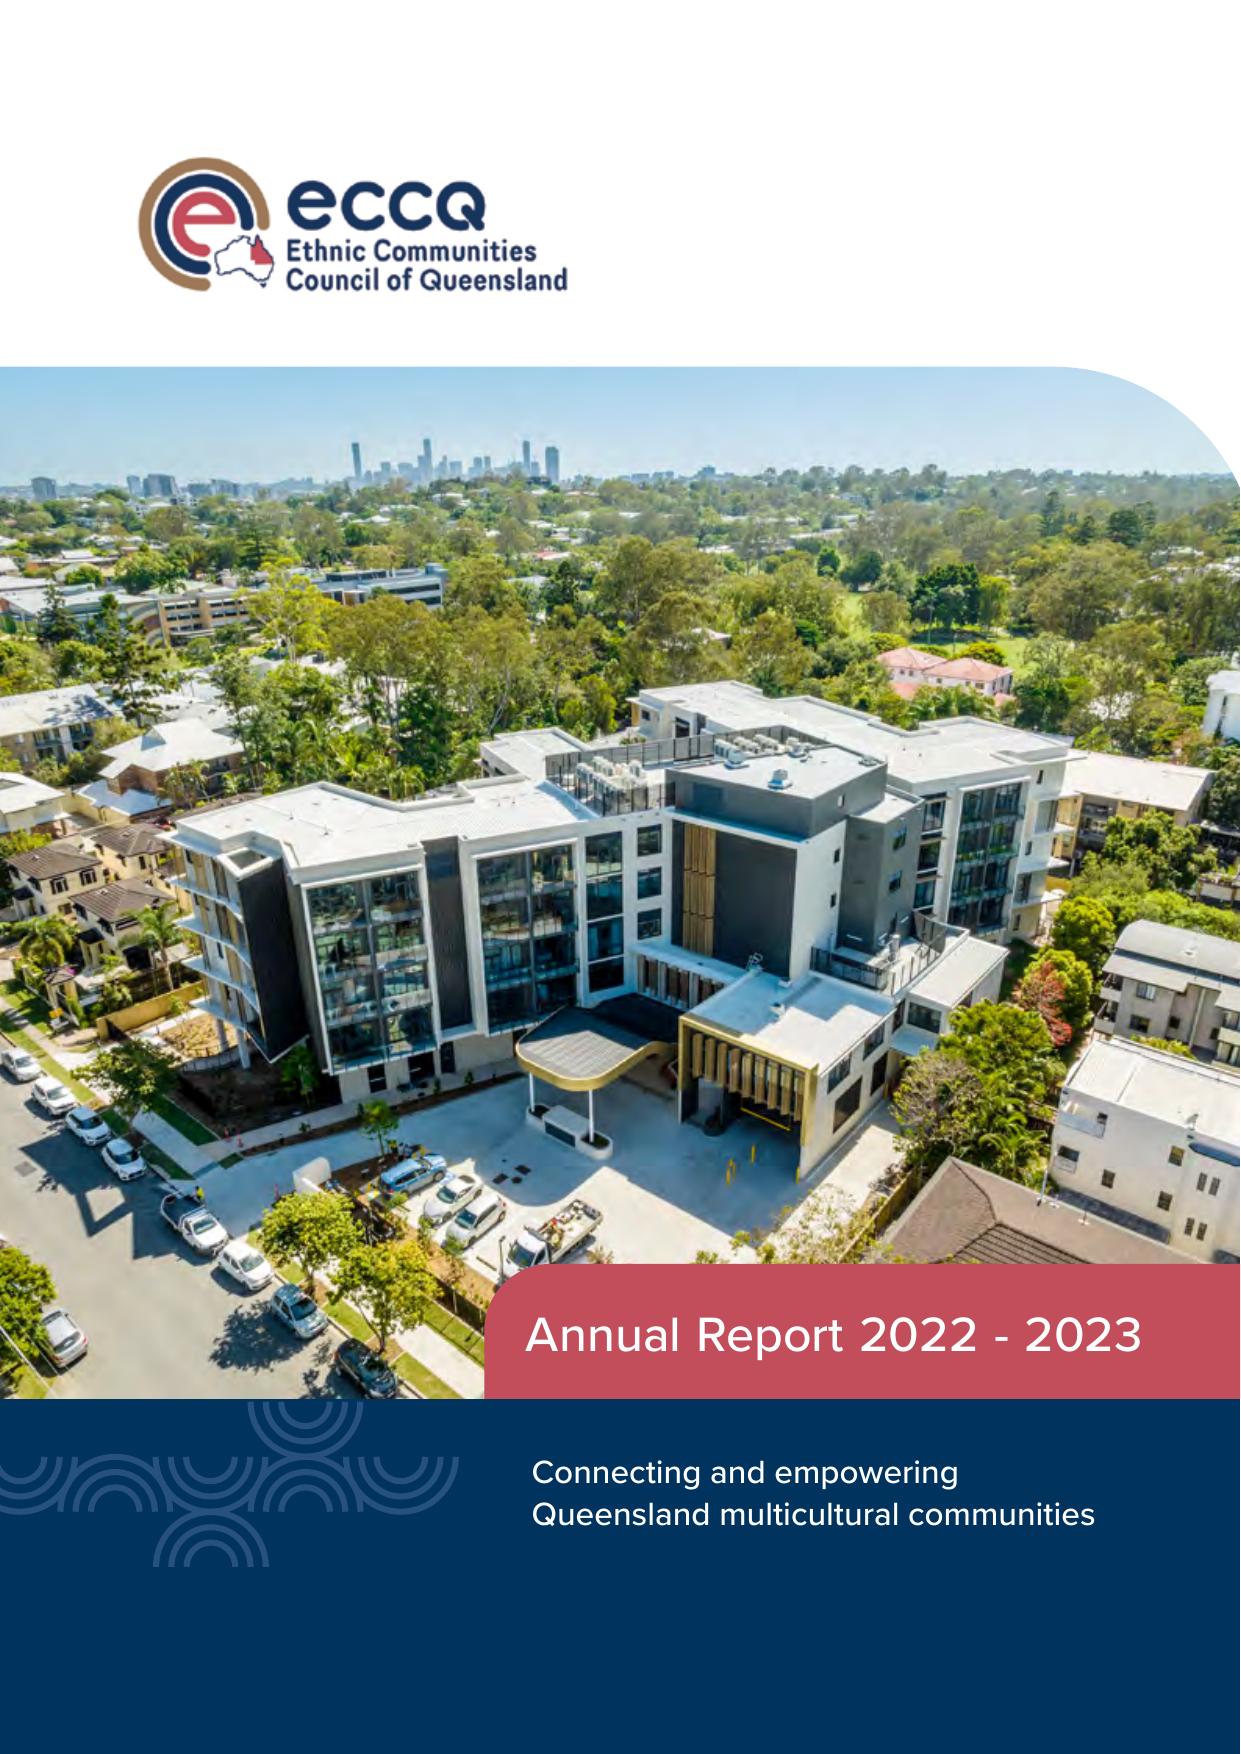 ECCQ 2023 Annual Report